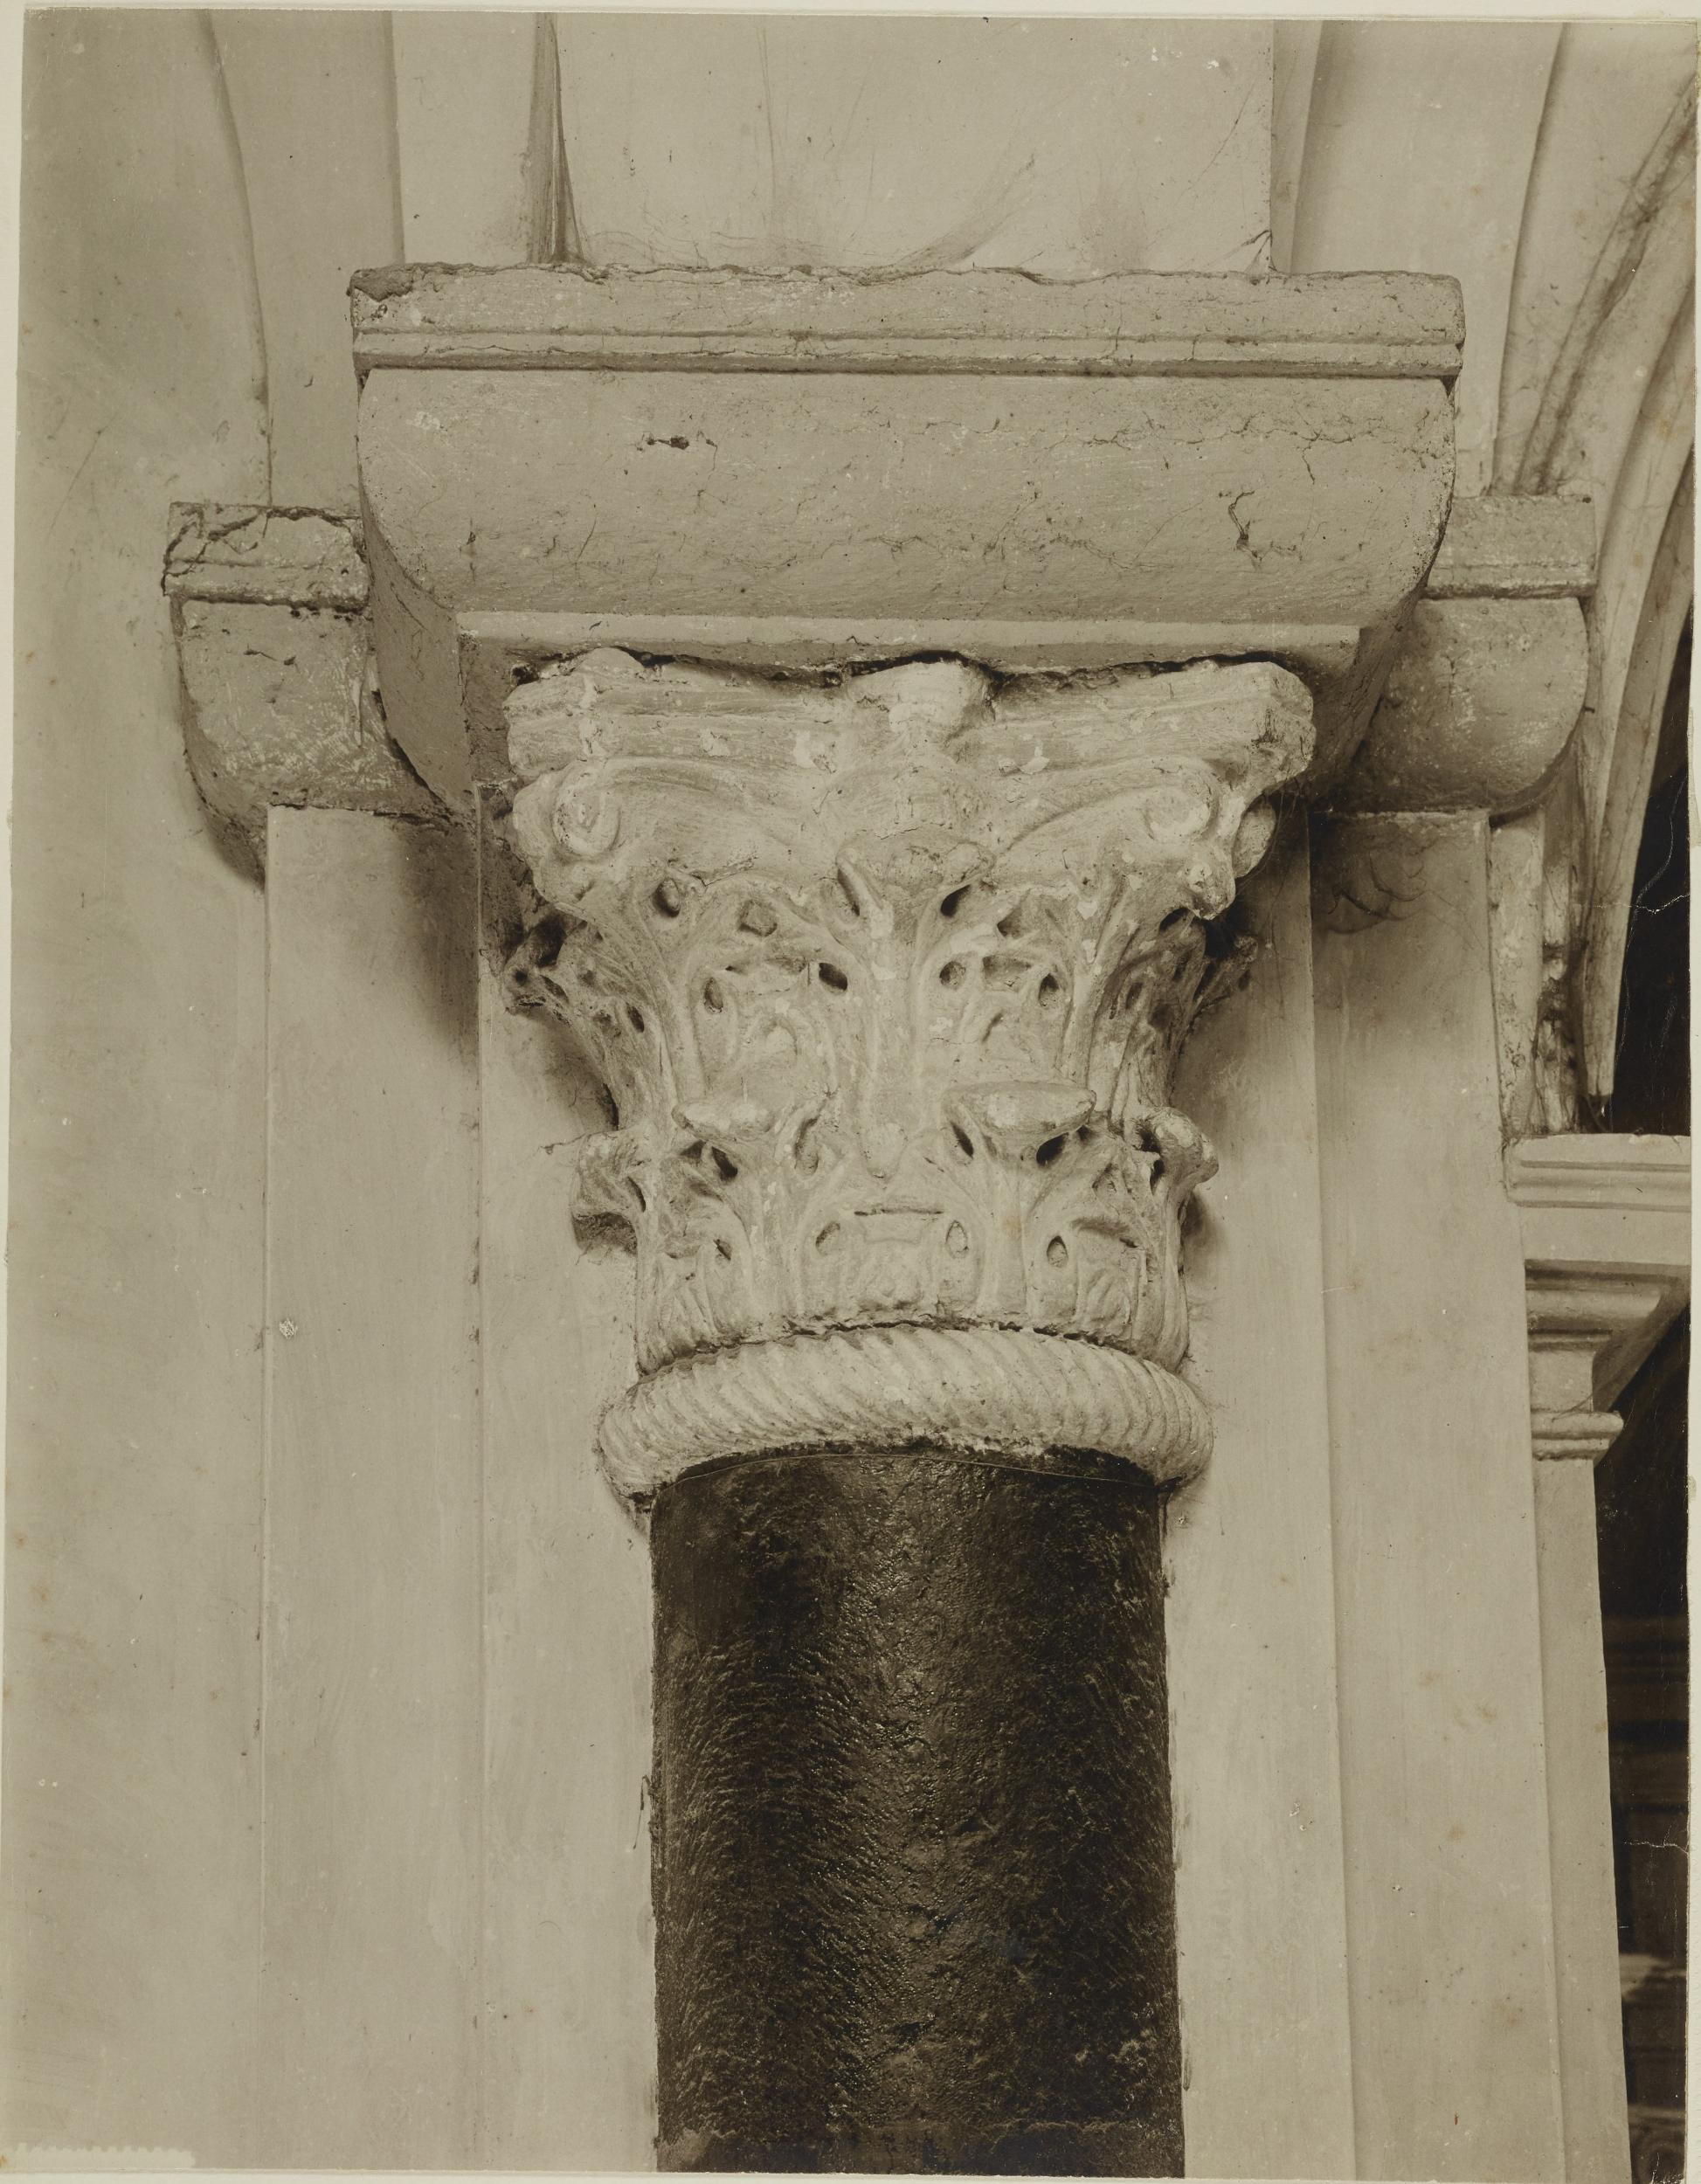 Fotografo non identificato, Bari - Basilica S. Nicola, capitello, 1901-1950, gelatina ai sali d'argento/carta, MPI6023089